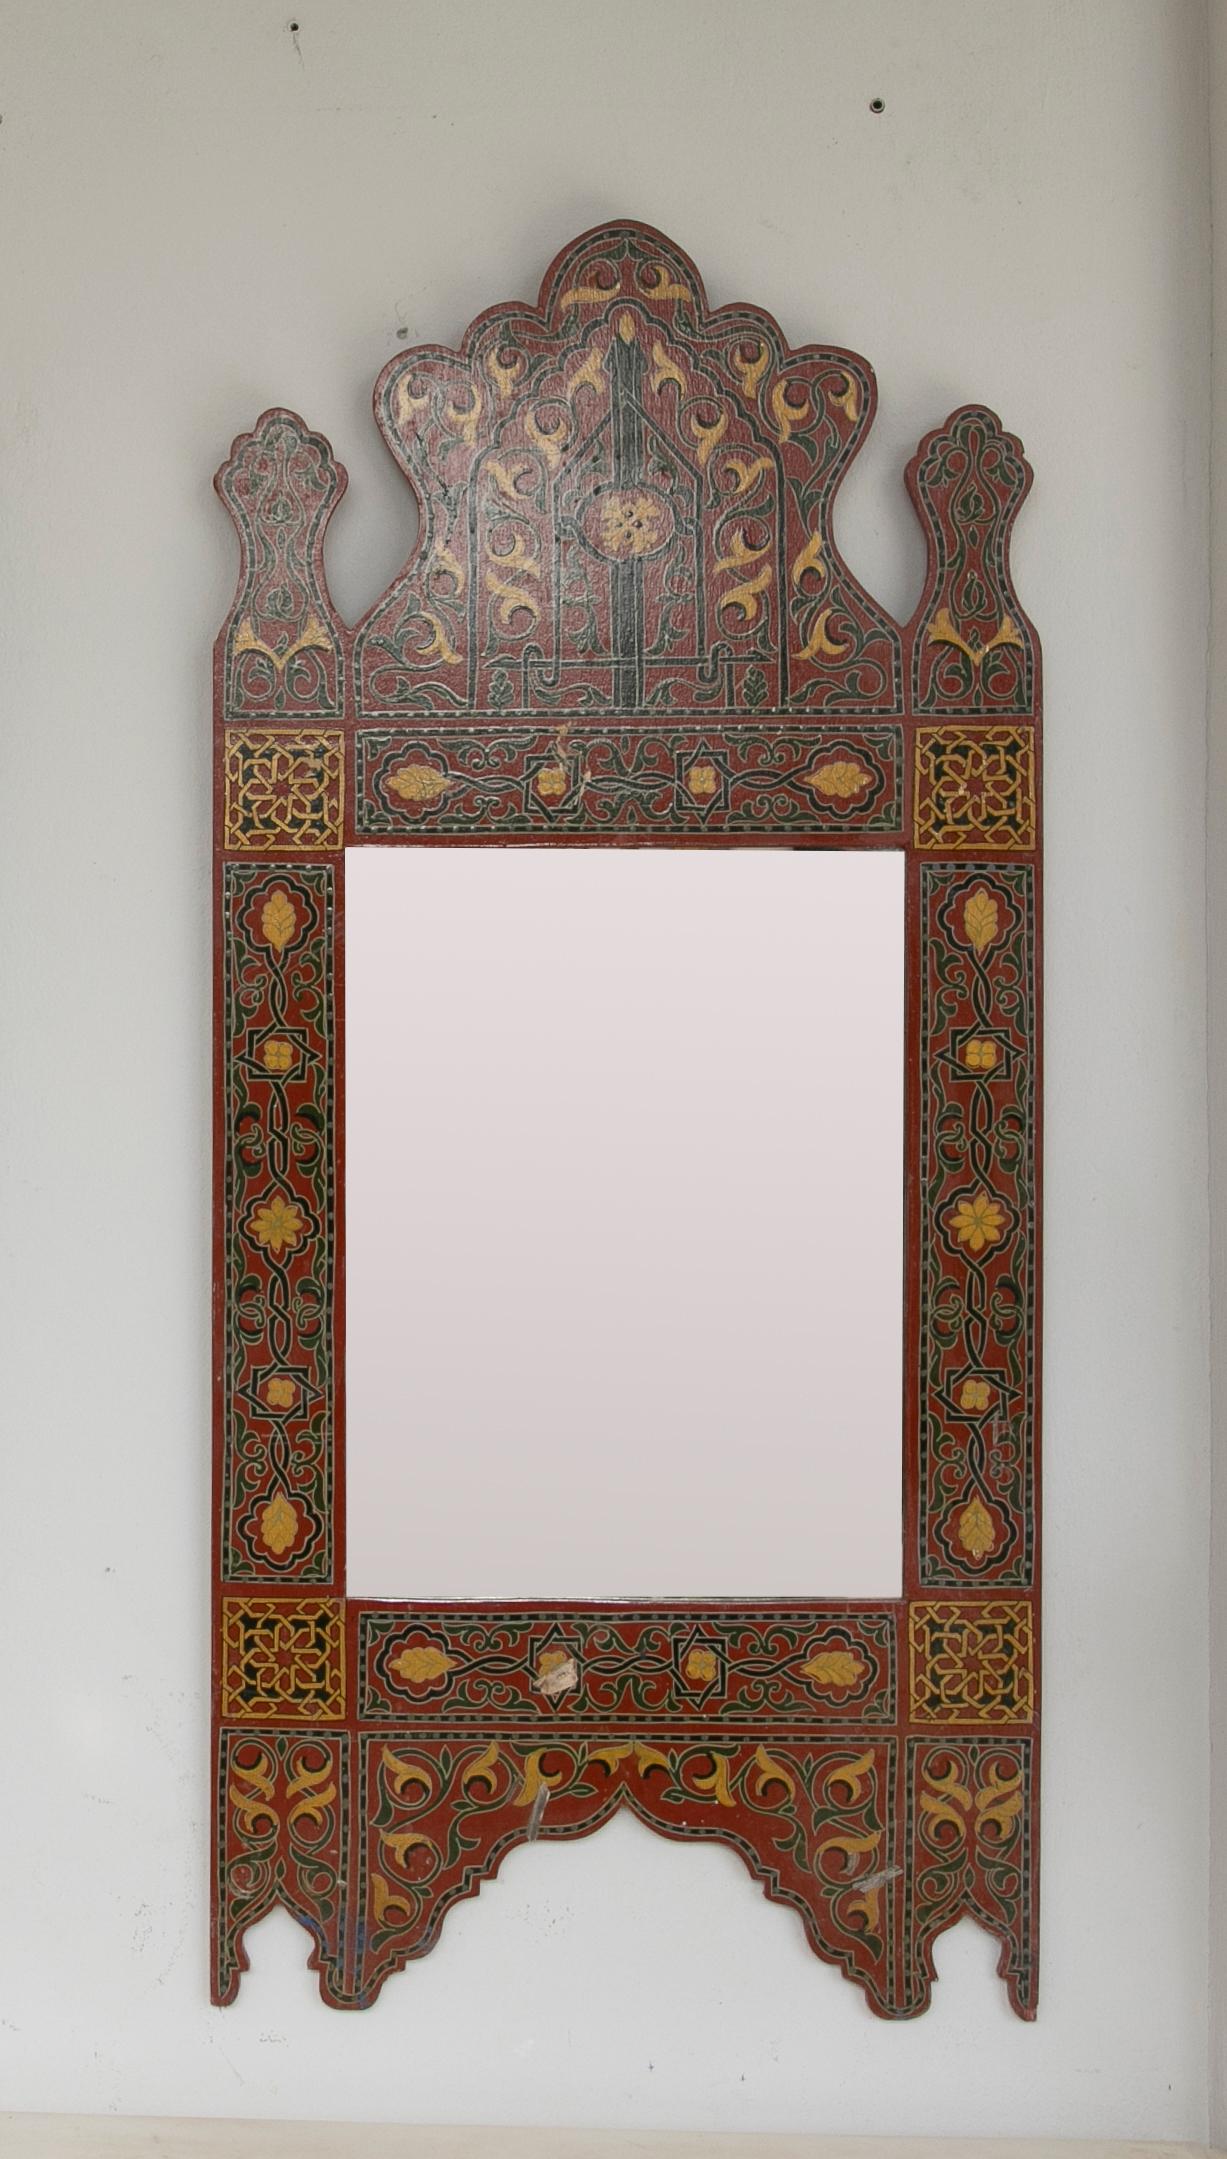 1990er Jahre Handbemalter Holzspiegel im marokkanischen Stil mit arabischen Verzierungen.